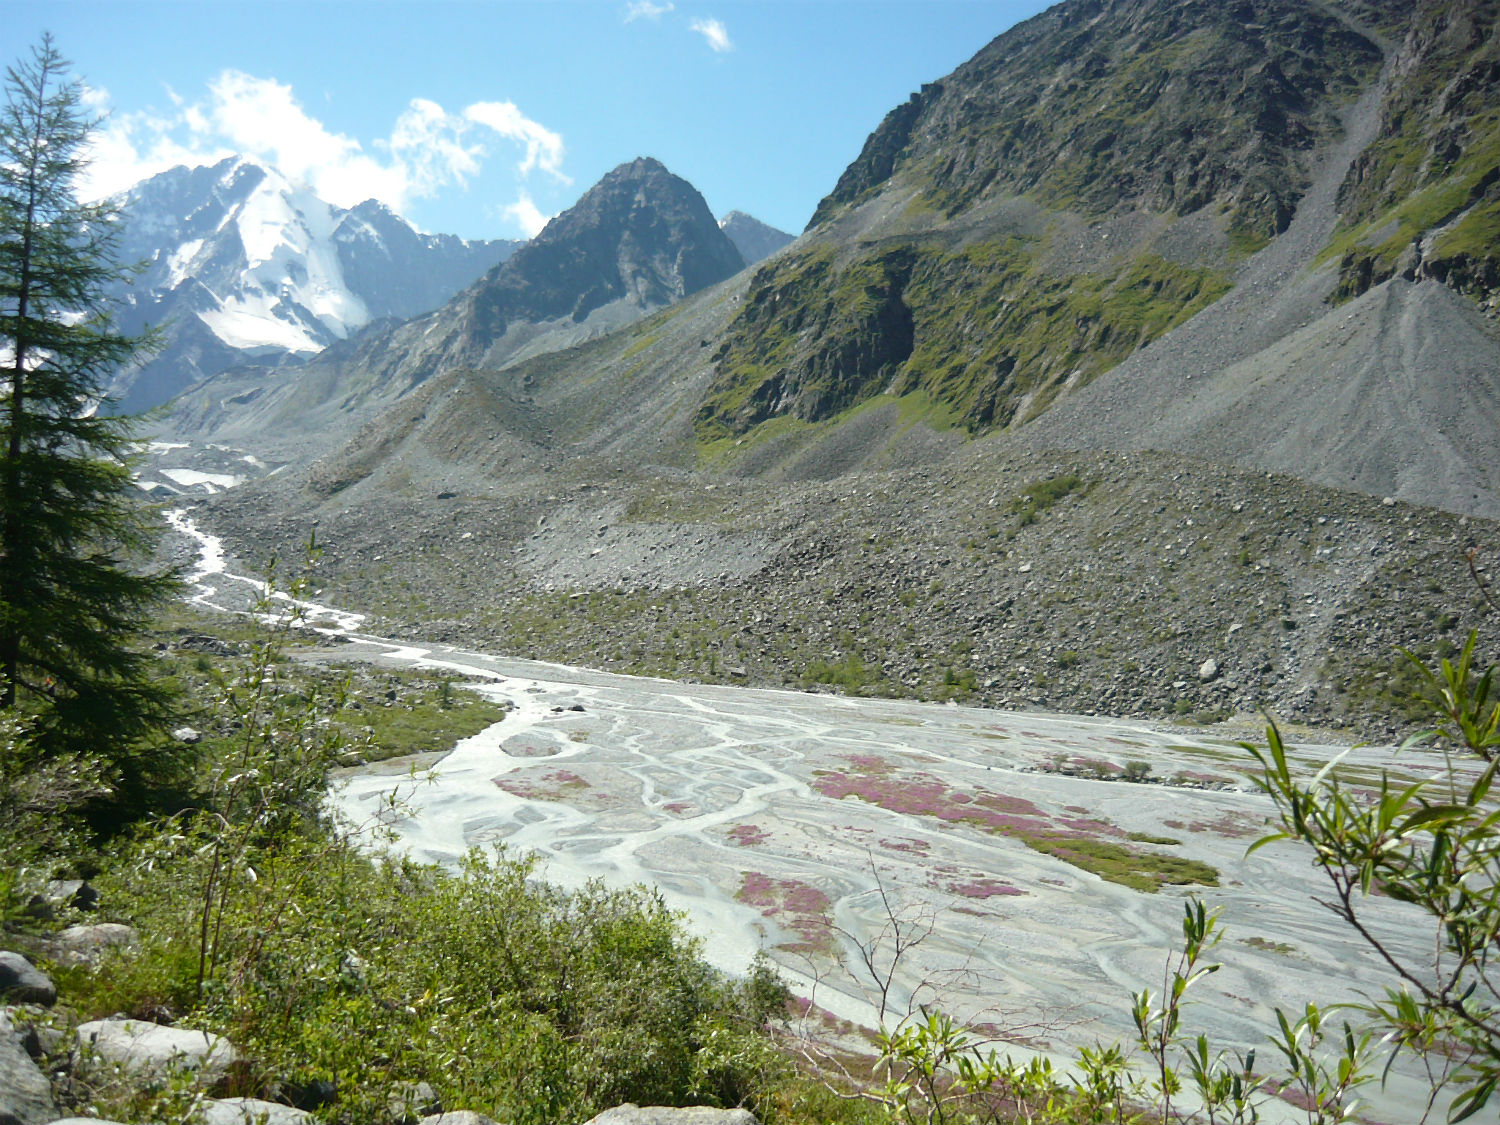 Морена Аккемского ледника, image of landscape/habitat.